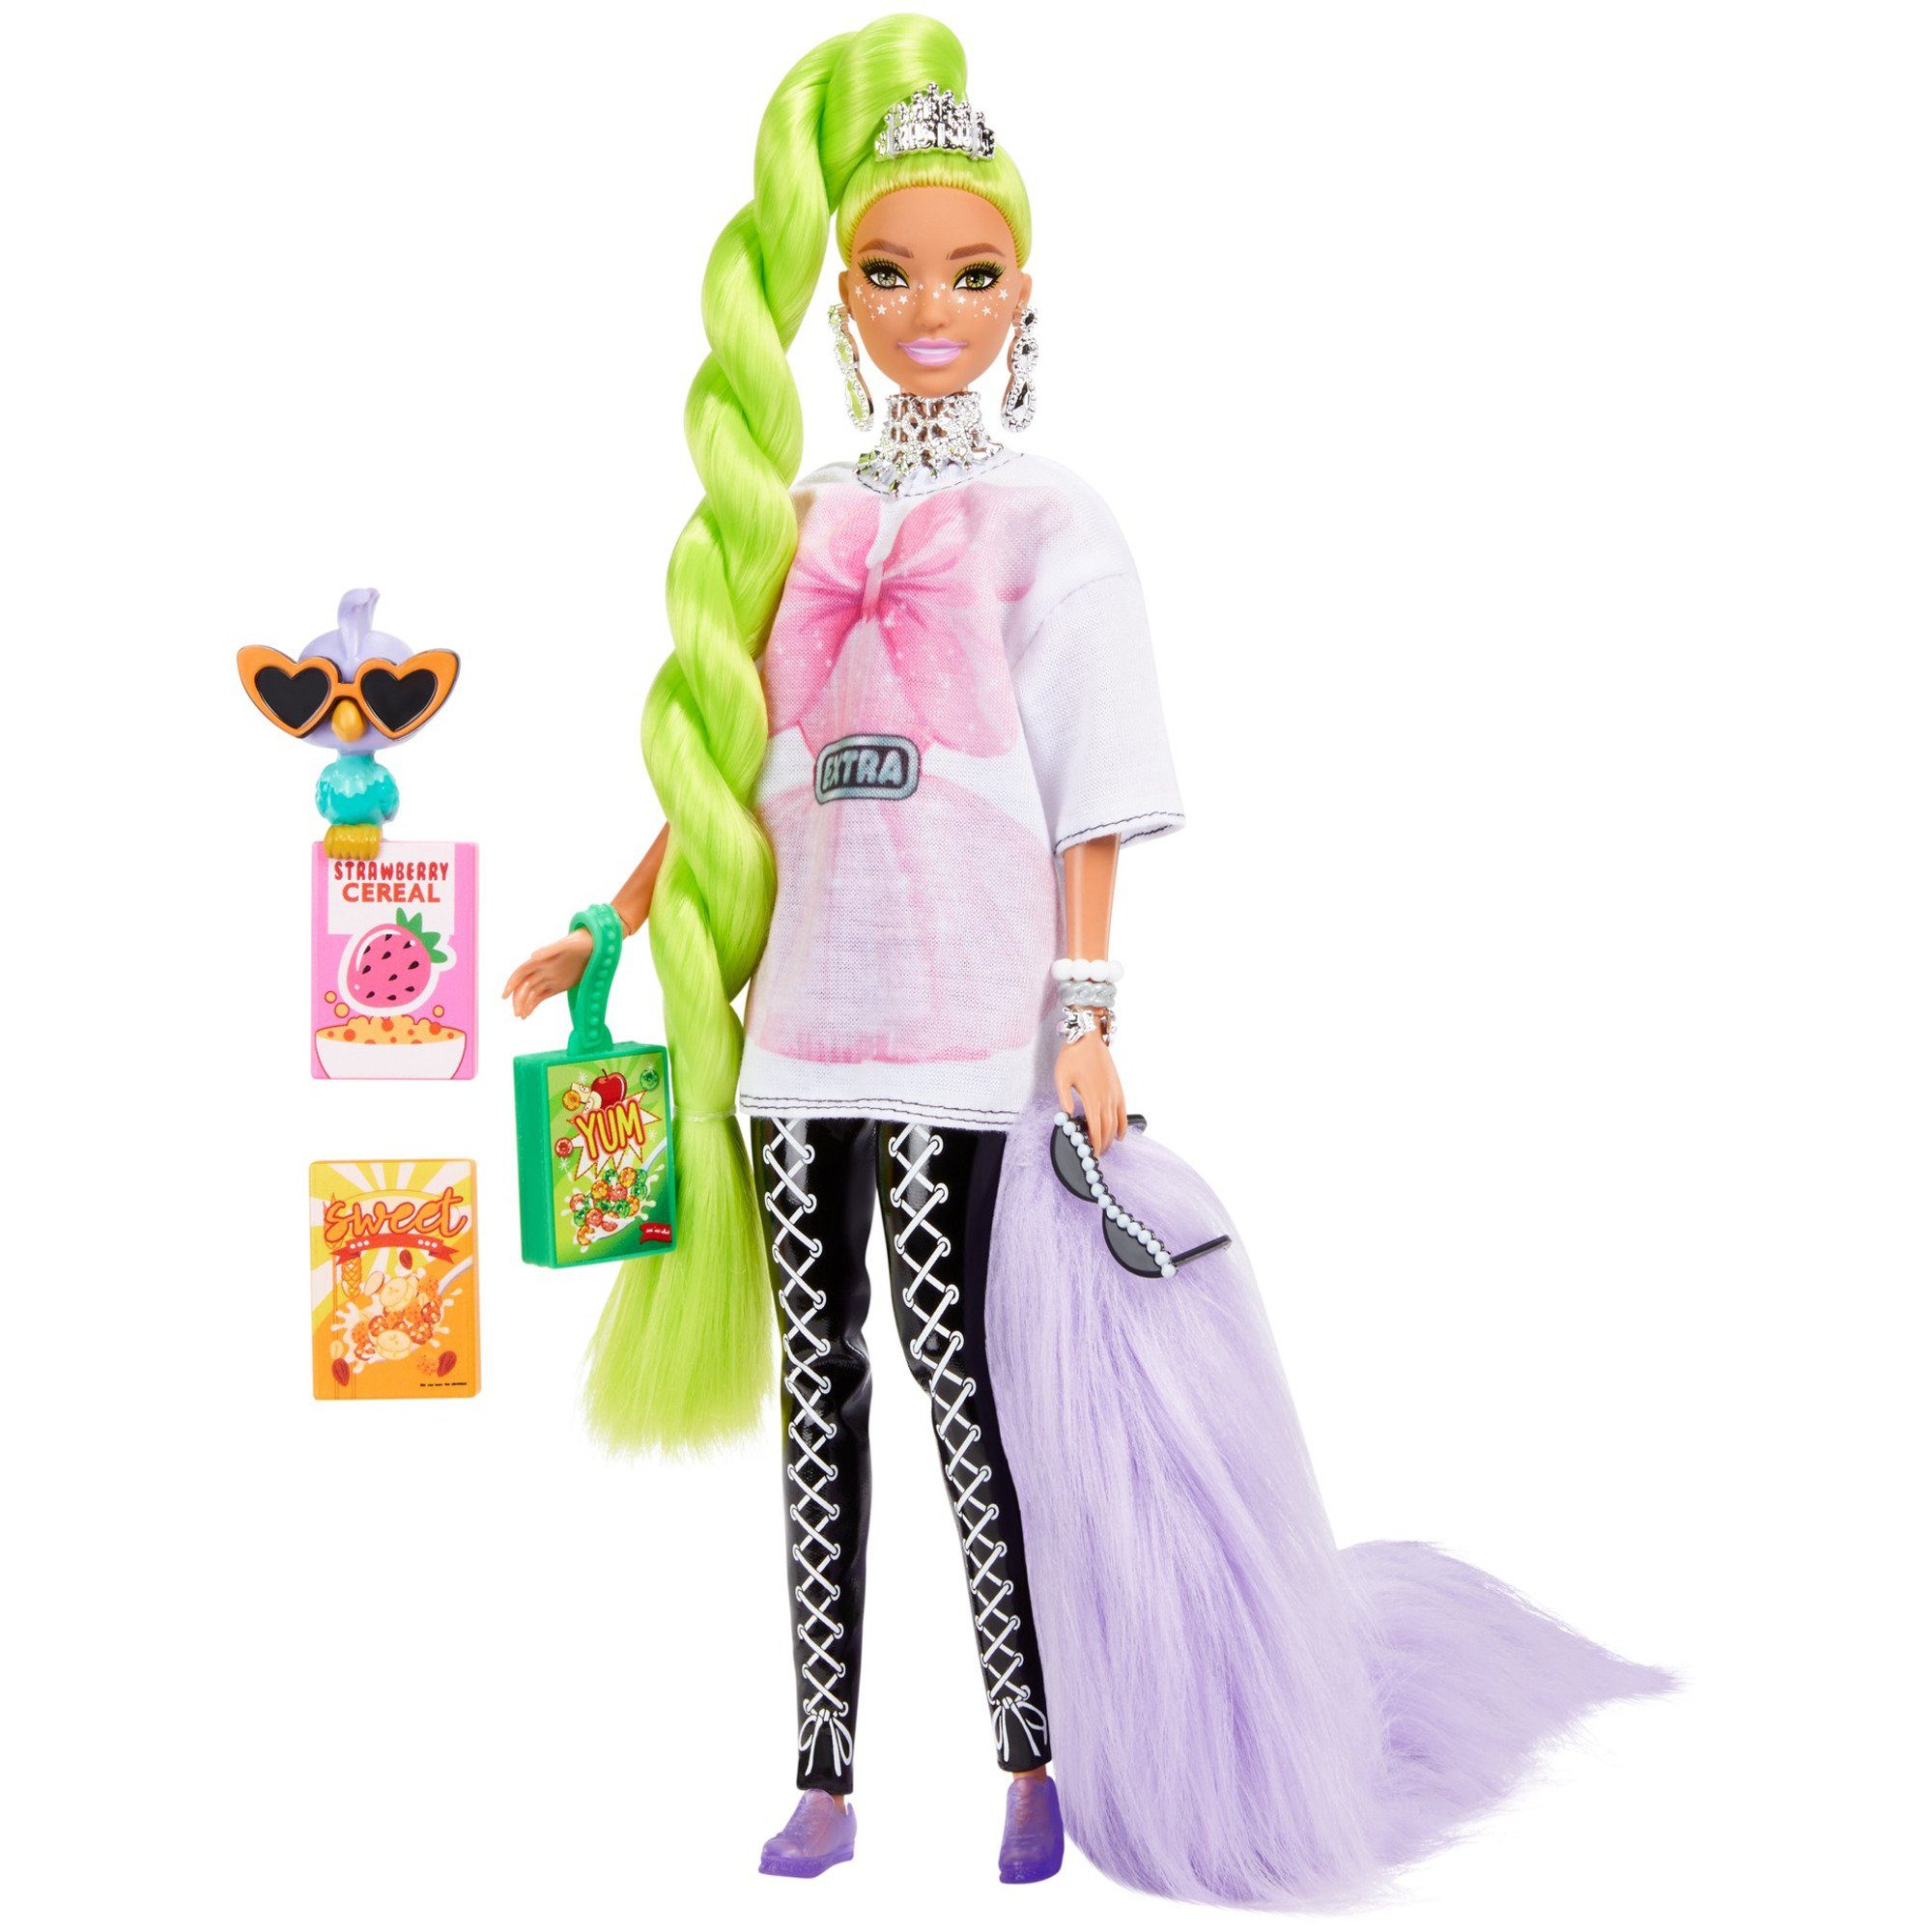 Extra Neongrünes Babypuppe Haar Barbie Mattel® Barbie Puppe